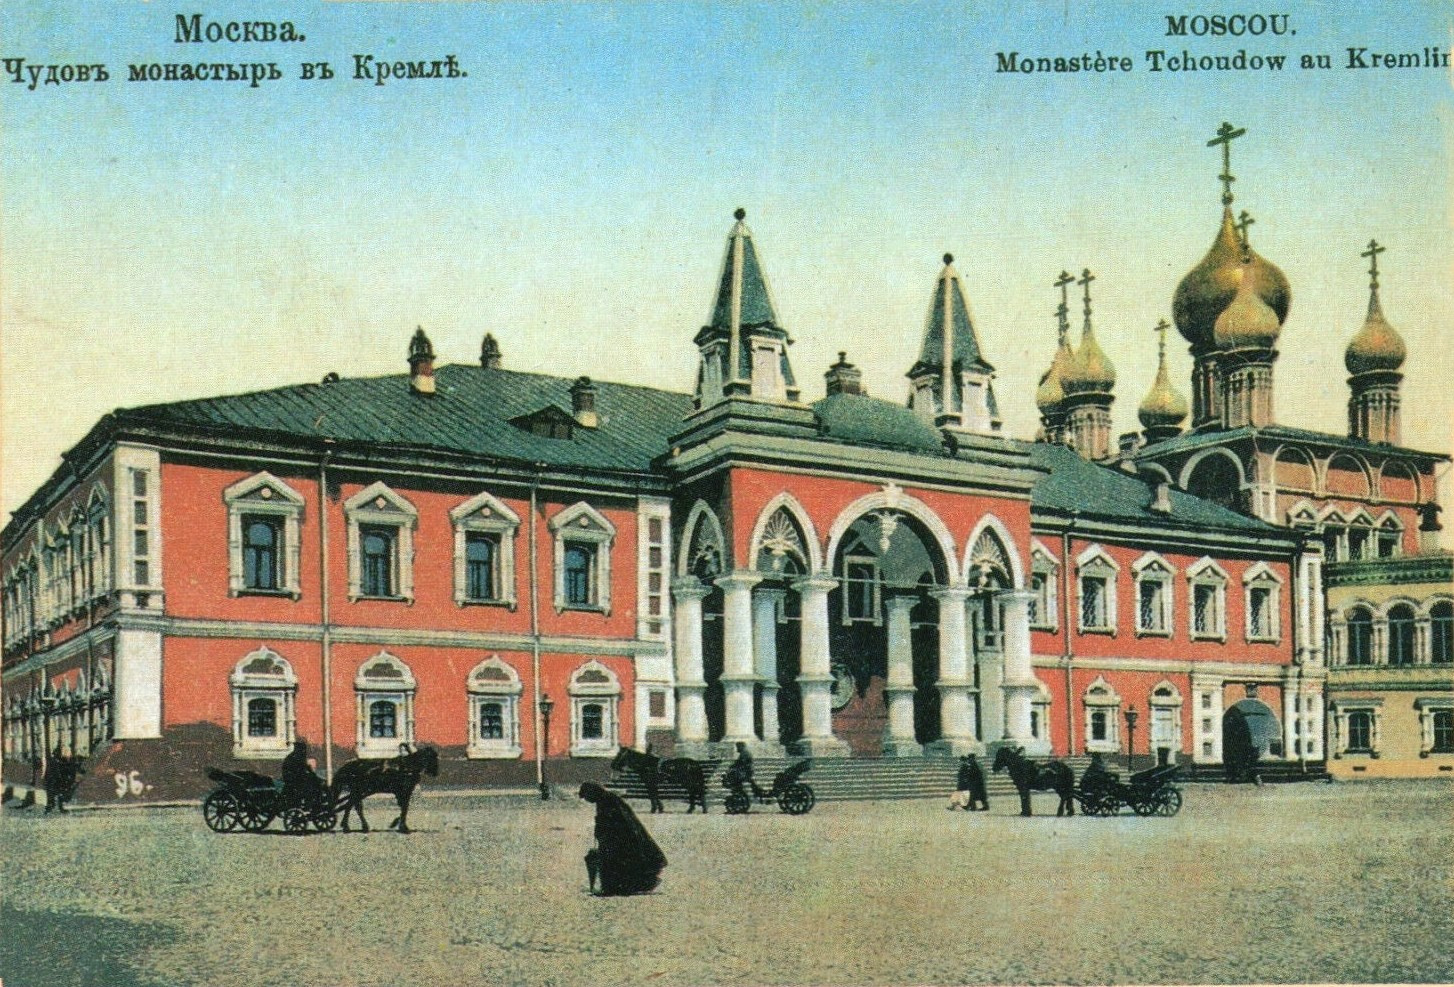 Изображение Чудова монастыря на почтовой открытке